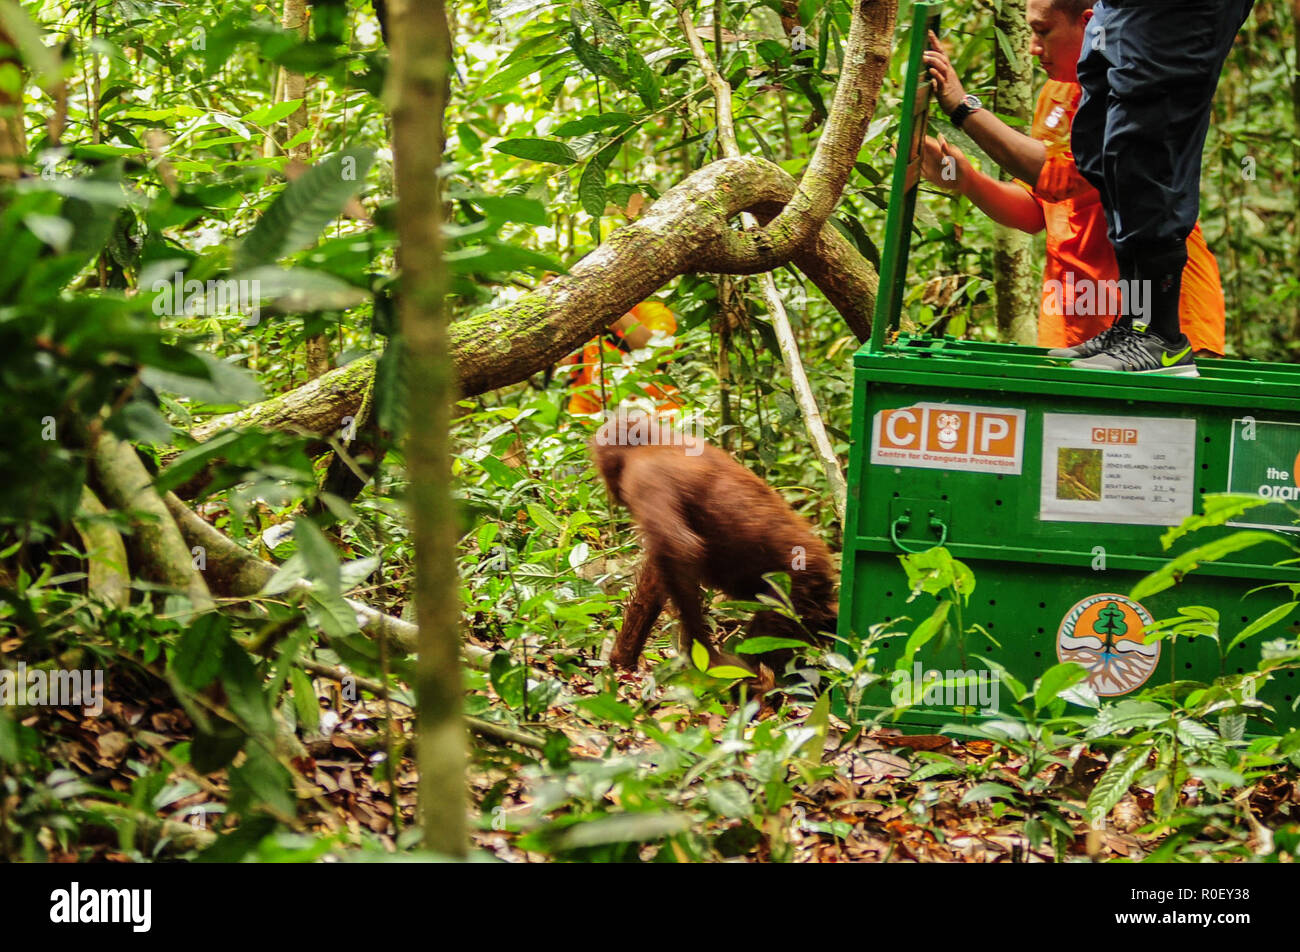 3 novembre 2018 - Fiume Lesan foresta protetta, a Est di Kalimantan, Indonesia - Novi, un orango tango primate su dove possono essere rilasciate nell'ambiente selvatico nel fiume Lesan foresta protetta, Kalimantan orientale, Indonesia. Questi due Bornean orangutan (Pongo pygmaeus morio), Novi e Leci sono il risultato della rinuncia della comunità ad Est di Kalimantan Risorse Naturali Conservation Centre in 2014 e 2016 nella regione Tenggarong, dove sono stati rilasciati nel loro habitat naturale dopo anni di riabilitazione dal trauma causato spesso da persone. Attualmente vi sono 57.300 meno orangutan vivere Foto Stock